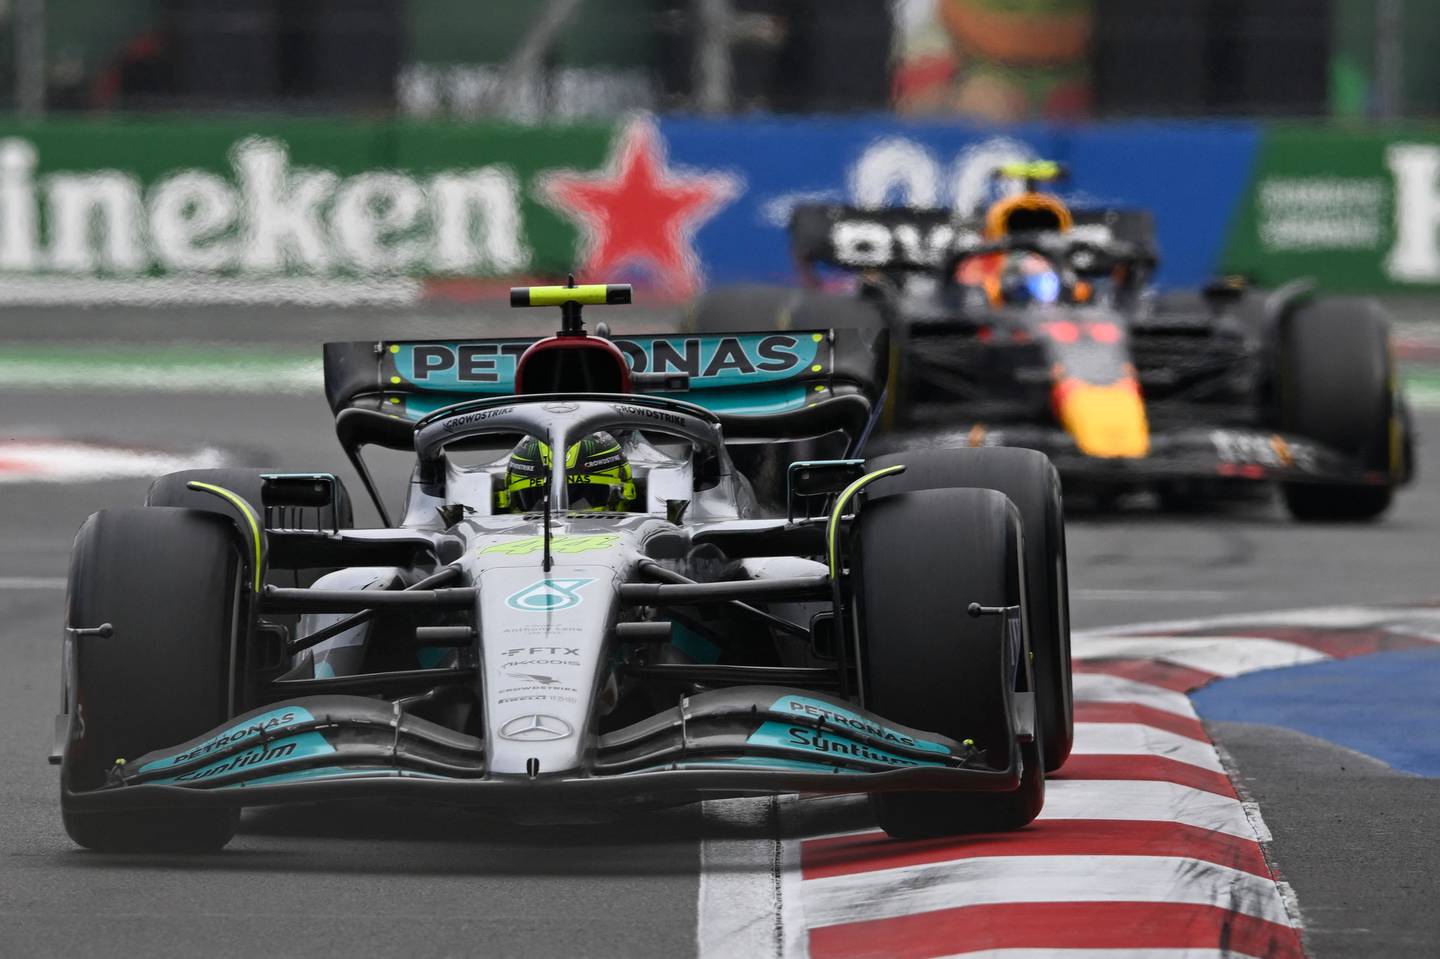 Le pilote britannique de Mercedes Lewis Hamilton court devant le pilote mexicain de Red Bull Racing Sergio Perez à Mexico dimanche.  AFP